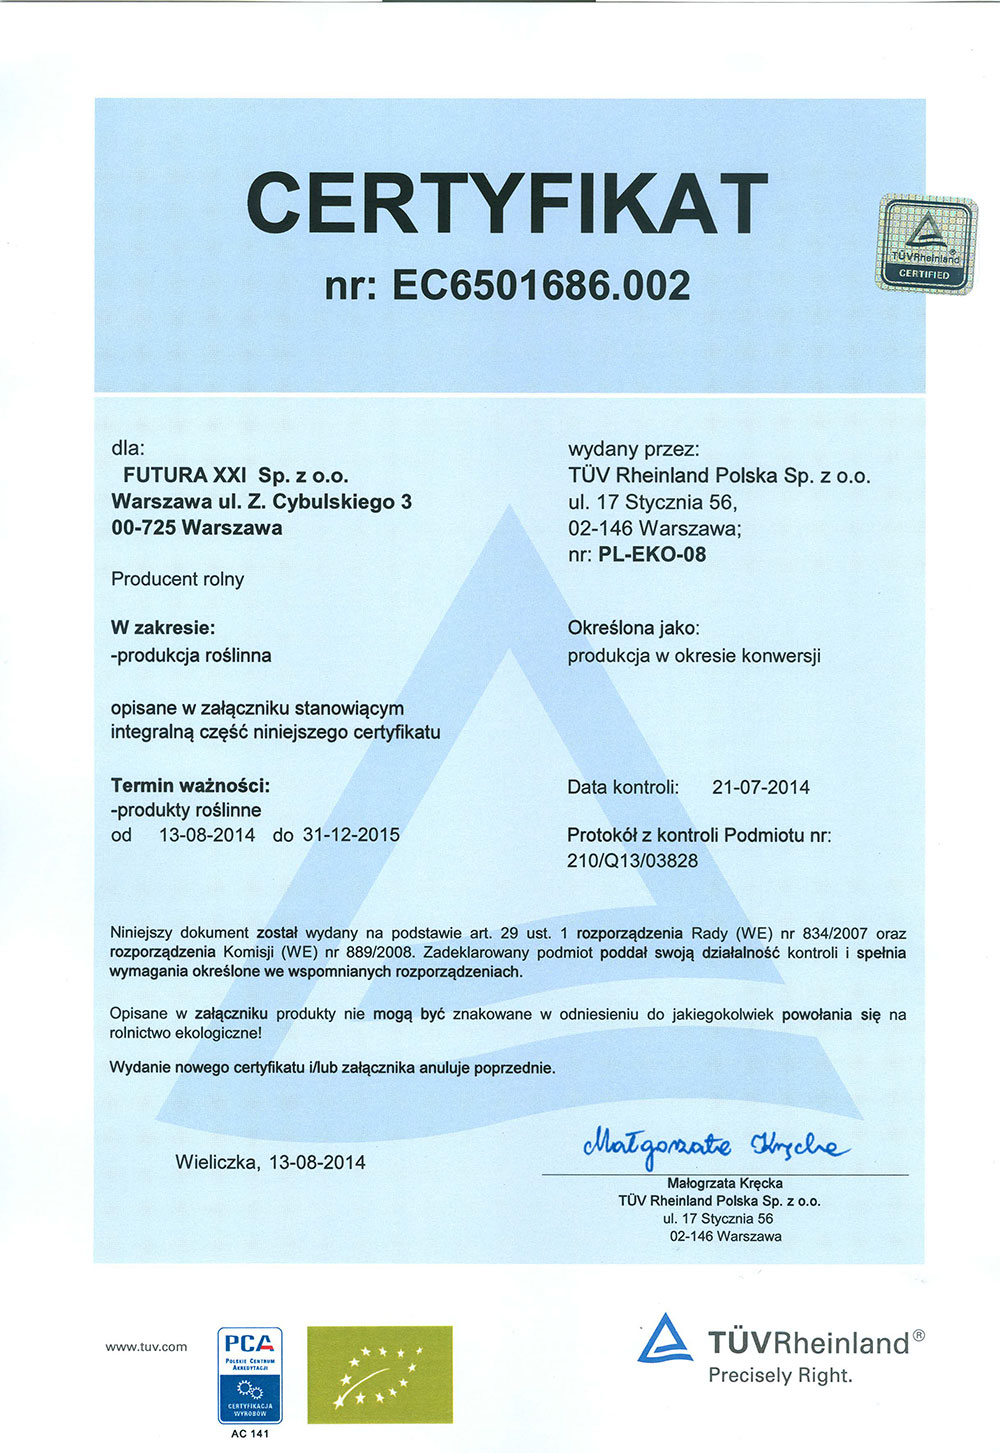 эко-большой сертификат